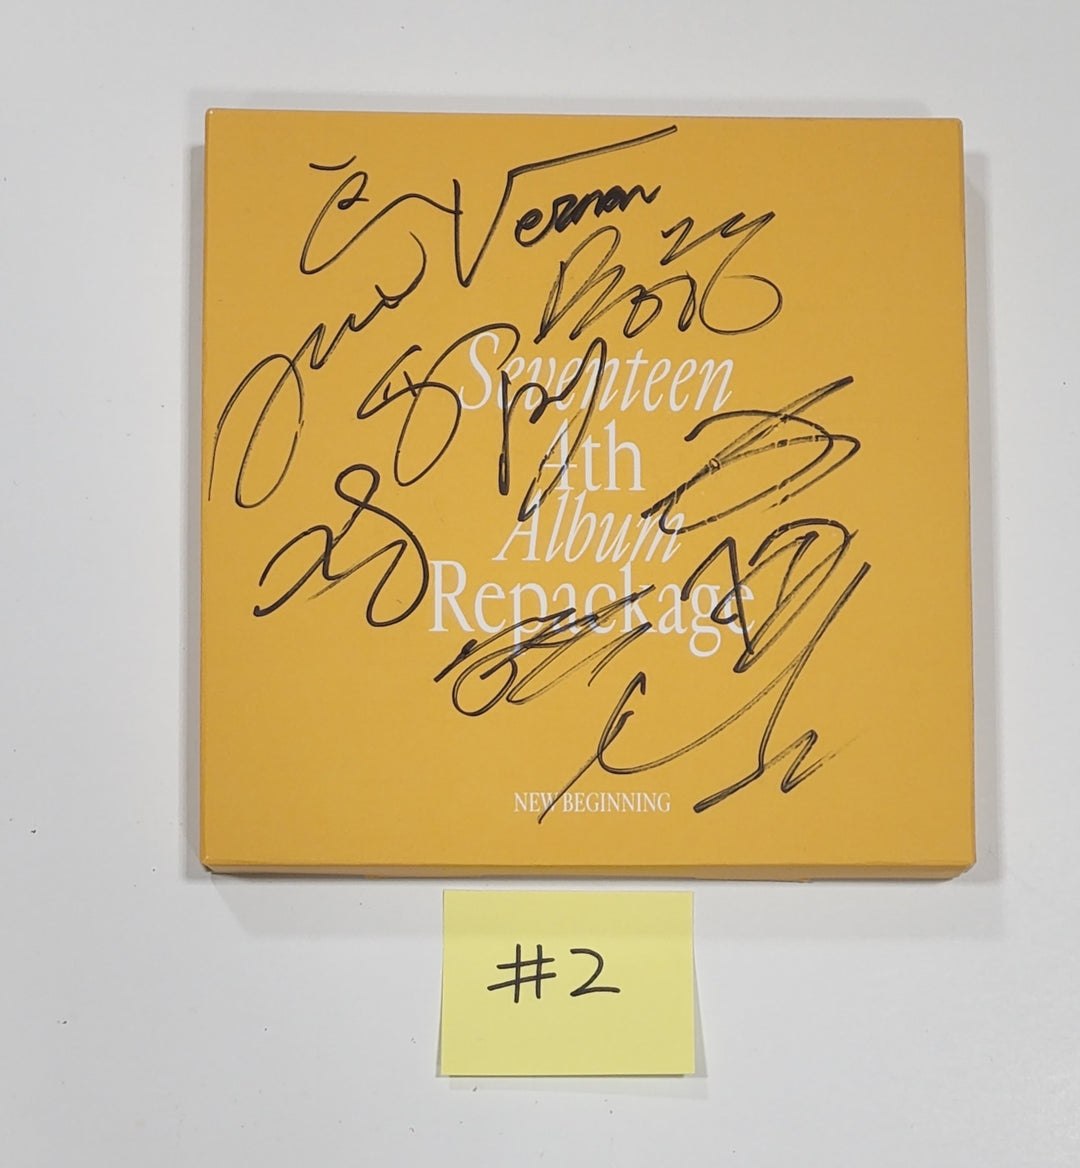 SEVENTEEN 4thアルバムリパッケージ「SECTOR 17」 - 直筆サイン入りプロモアルバム